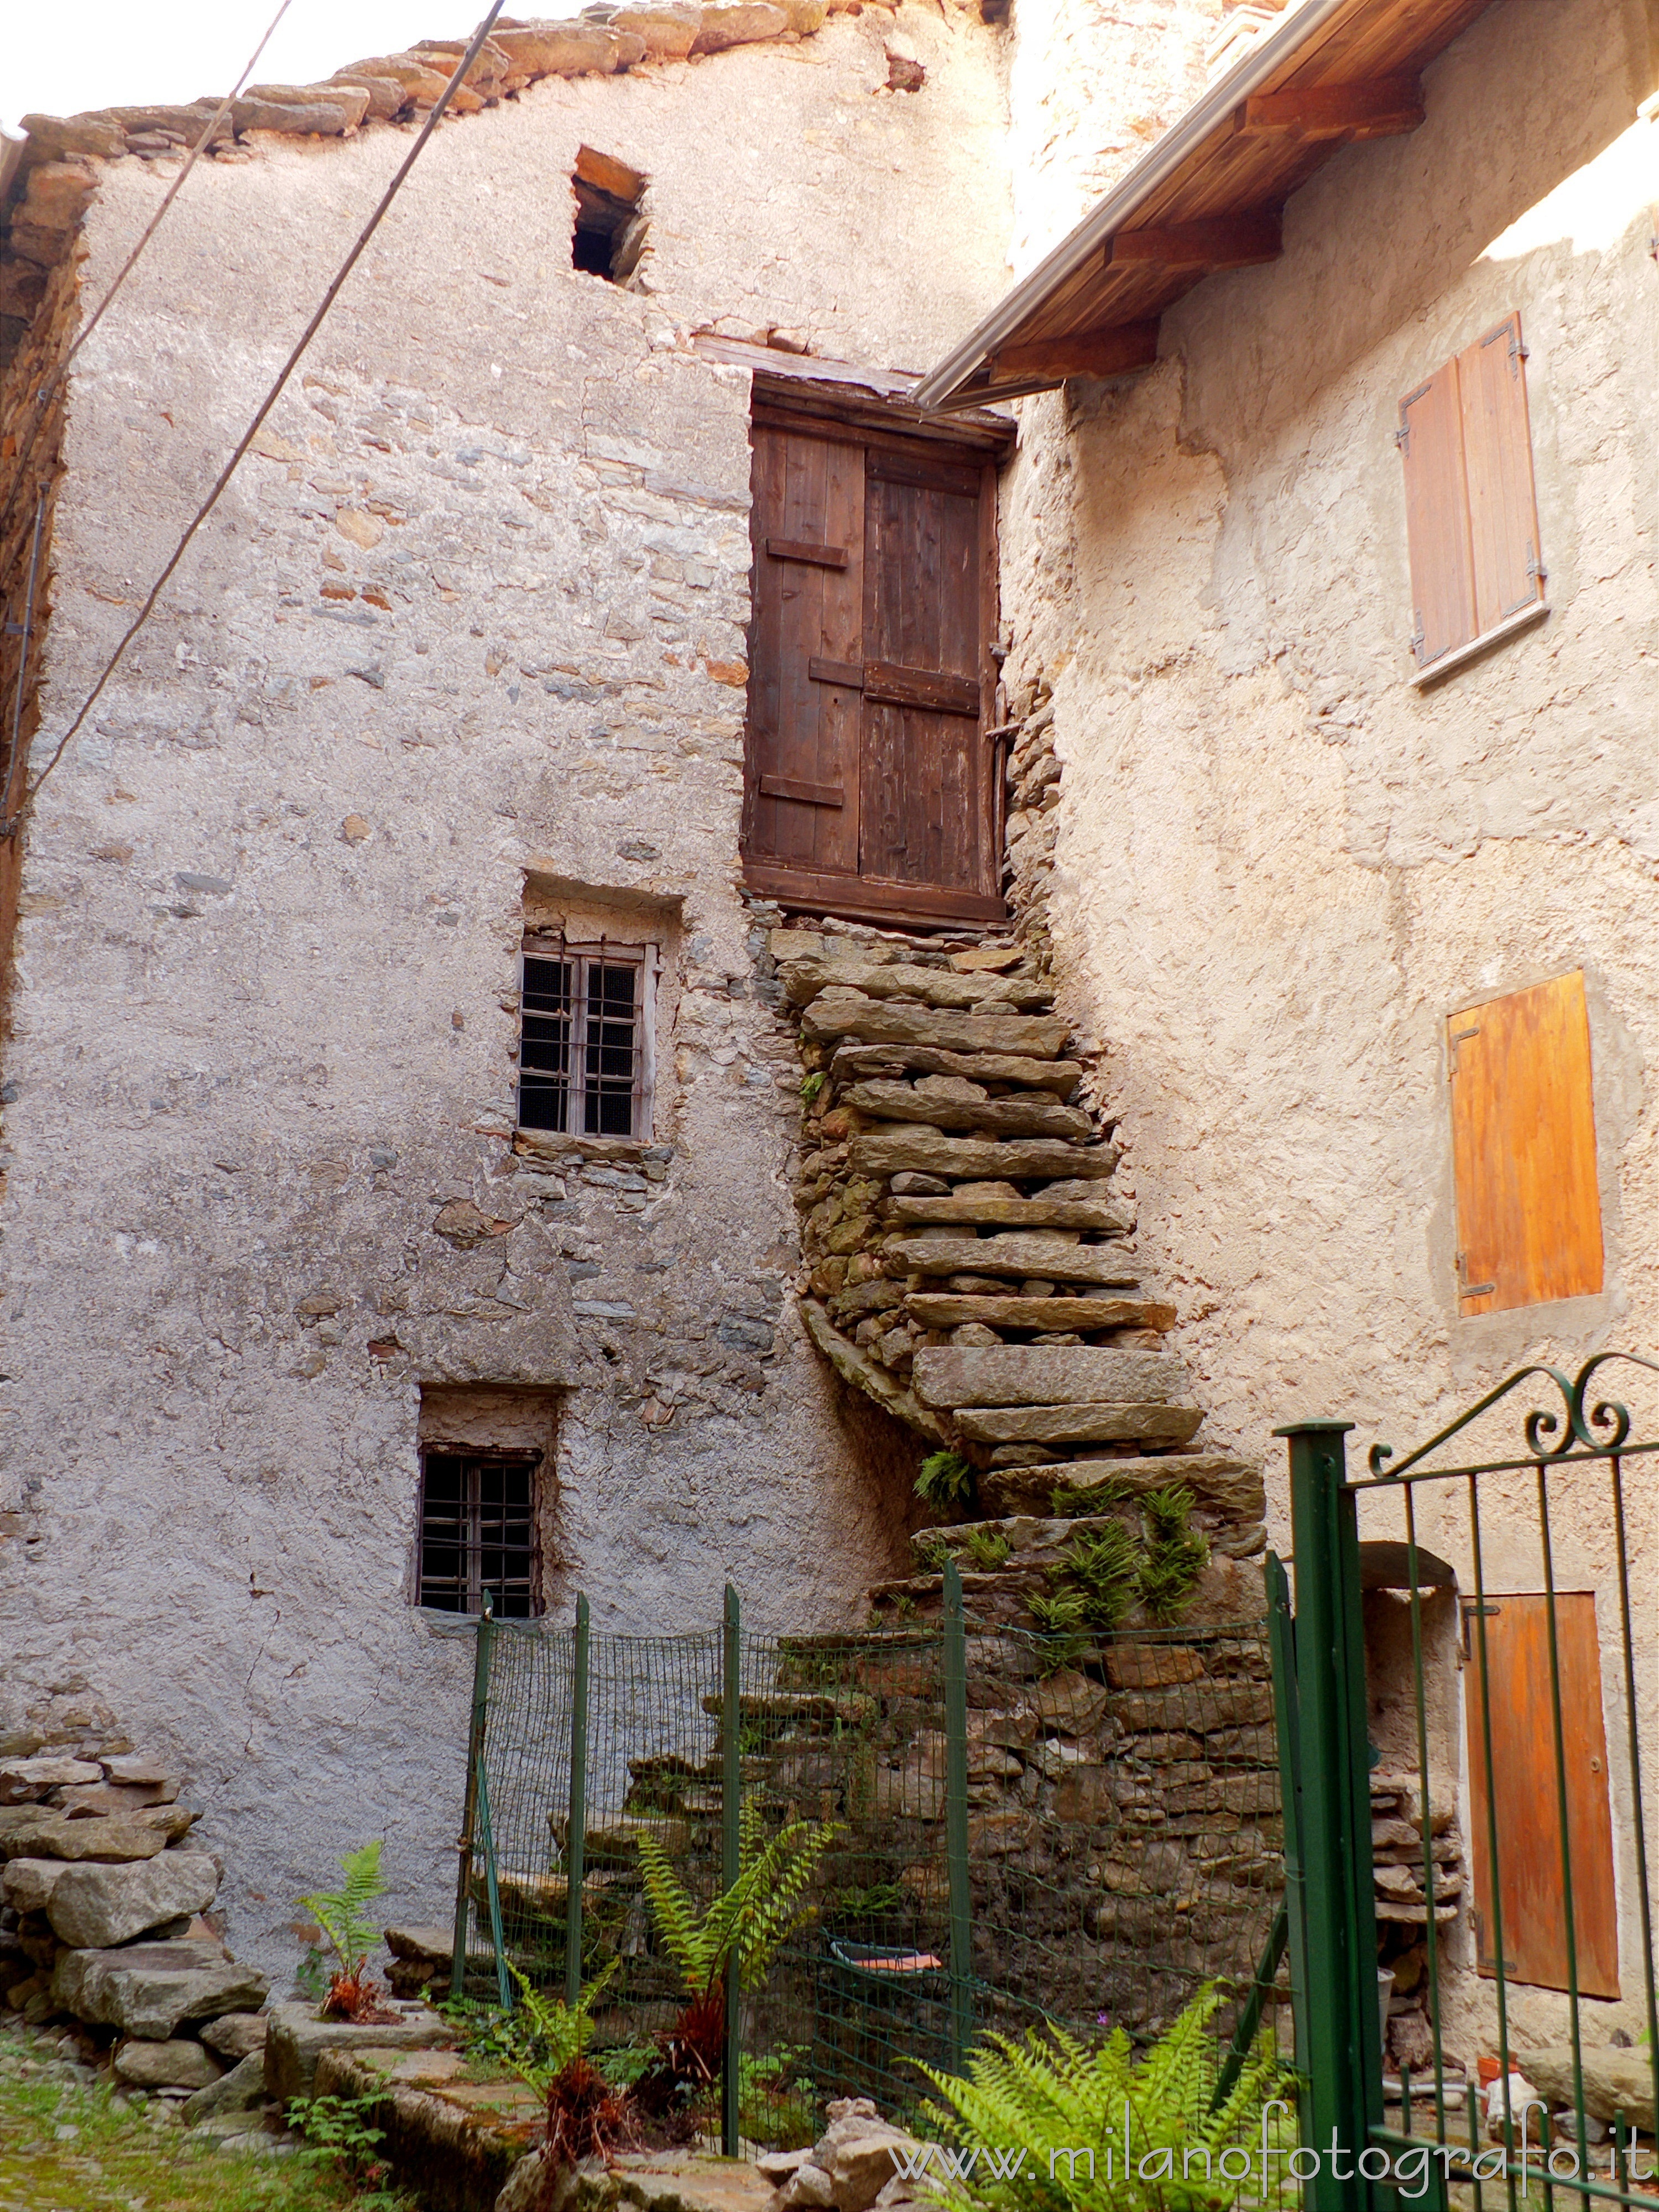 Montesinaro frazione di Piedicavallo (Biella): Antiche scale di accesso al primo piano - Montesinaro frazione di Piedicavallo (Biella)